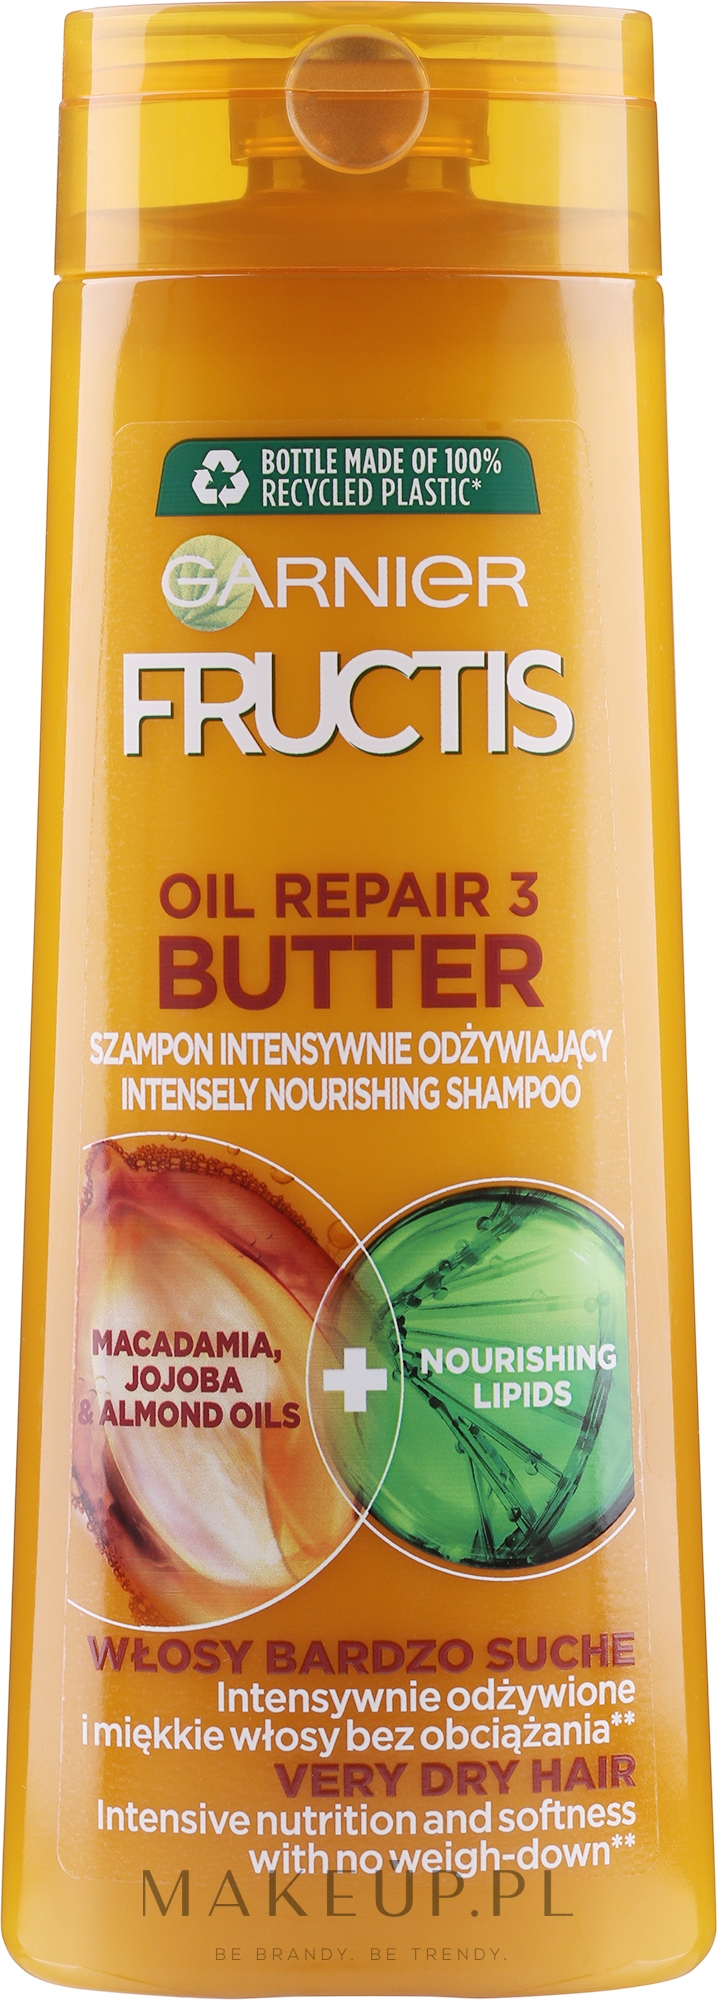 fructis szampon dla zniszczonych włosów